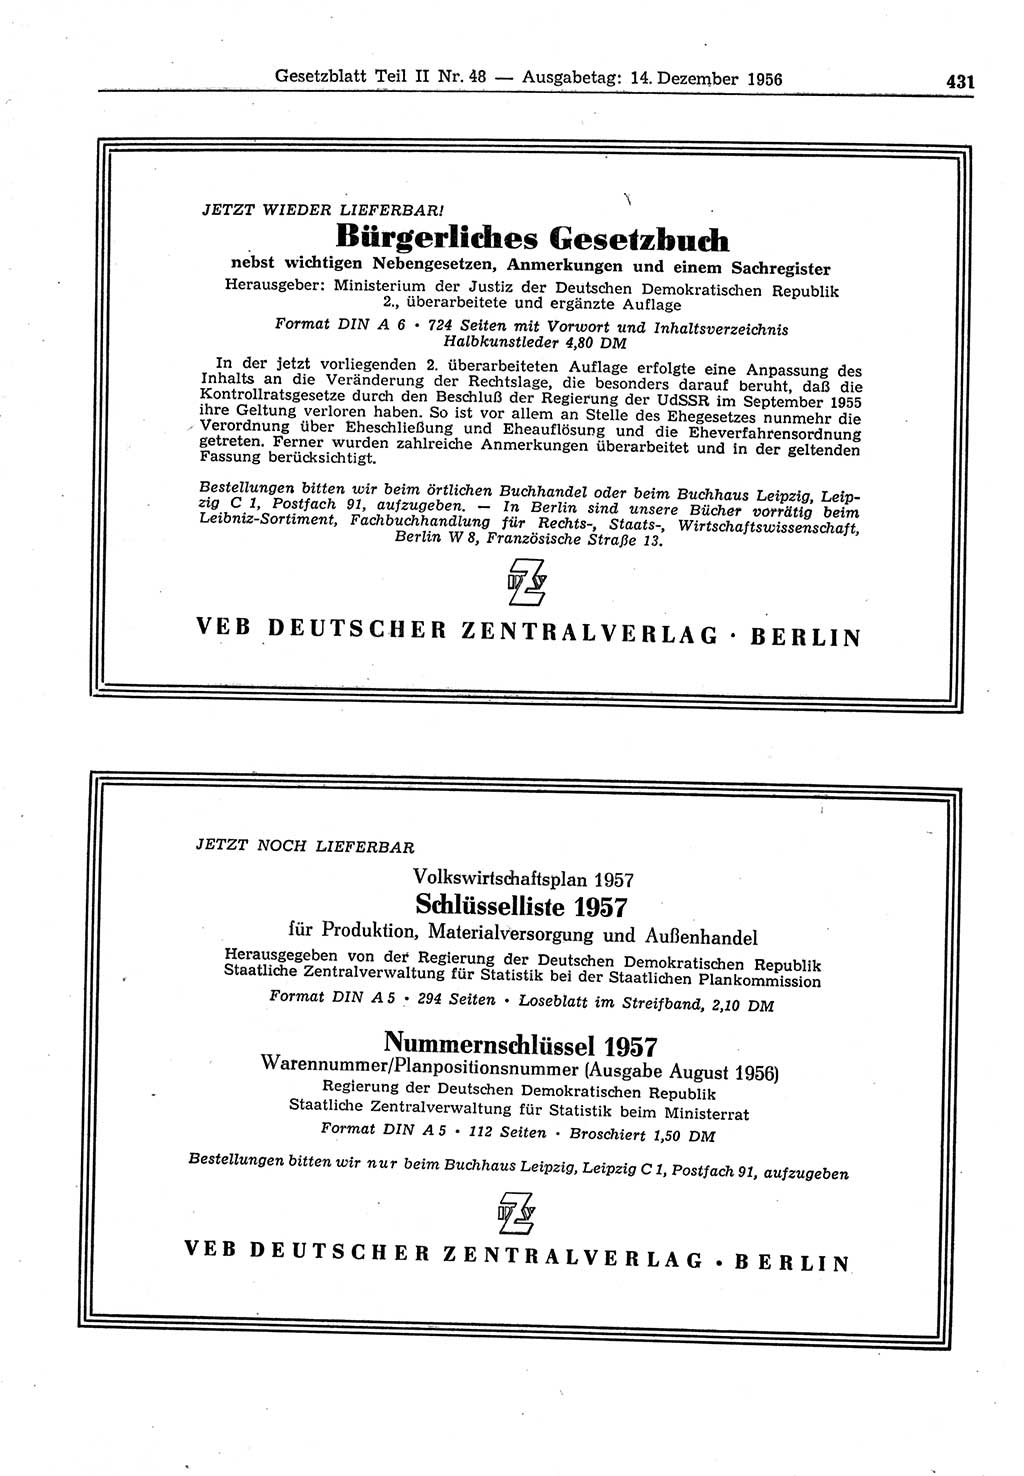 Gesetzblatt (GBl.) der Deutschen Demokratischen Republik (DDR) Teil ⅠⅠ 1956, Seite 431 (GBl. DDR ⅠⅠ 1956, S. 431)